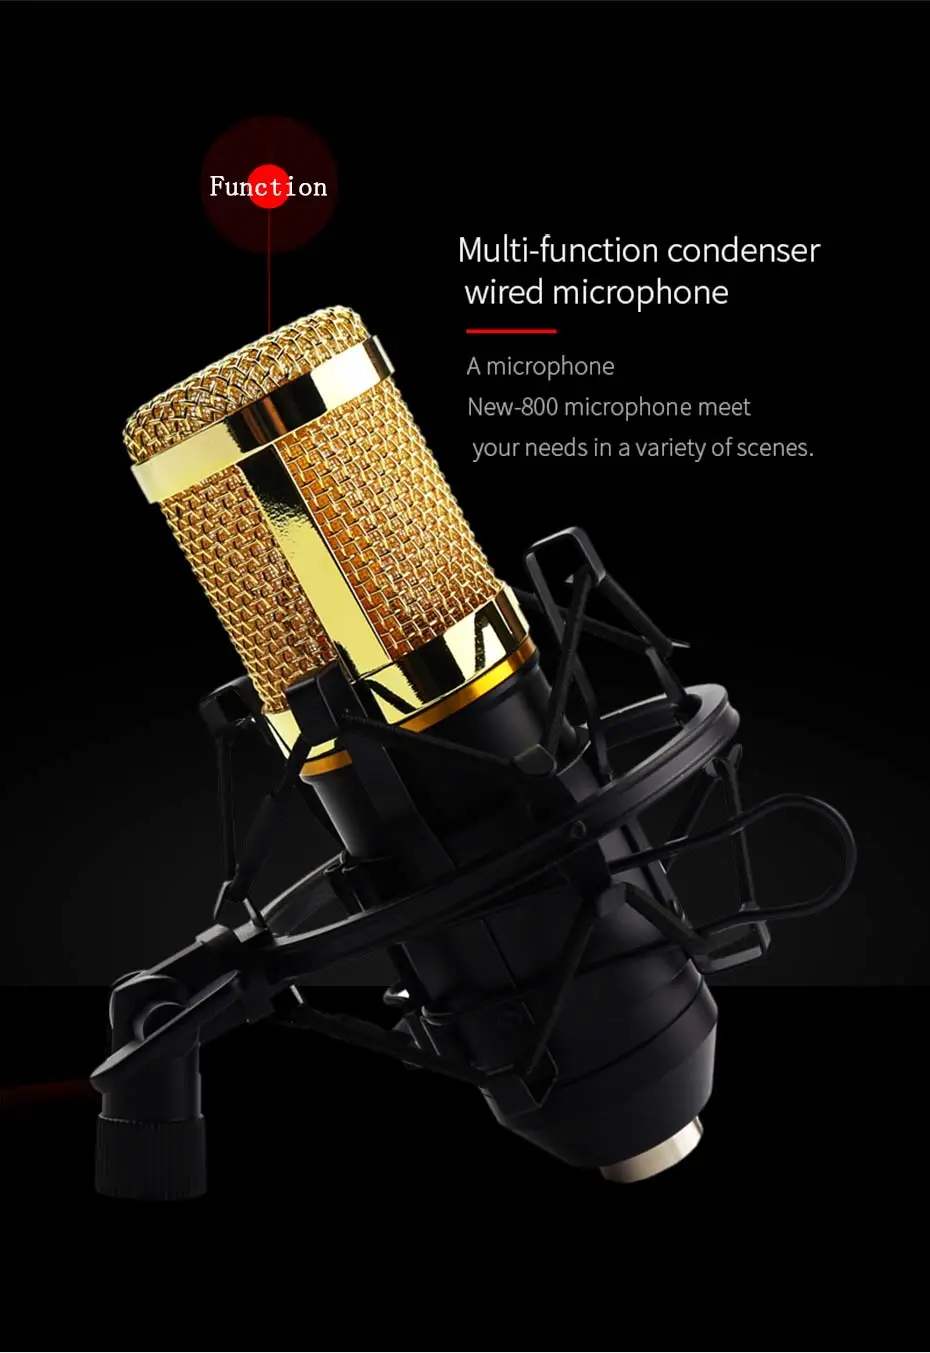 BM 800 конденсаторный микрофон bm800 48V Phantom power Mic звуковая карта с подставкой поп-фильтр Tritop для компьютера ПК видеозапись